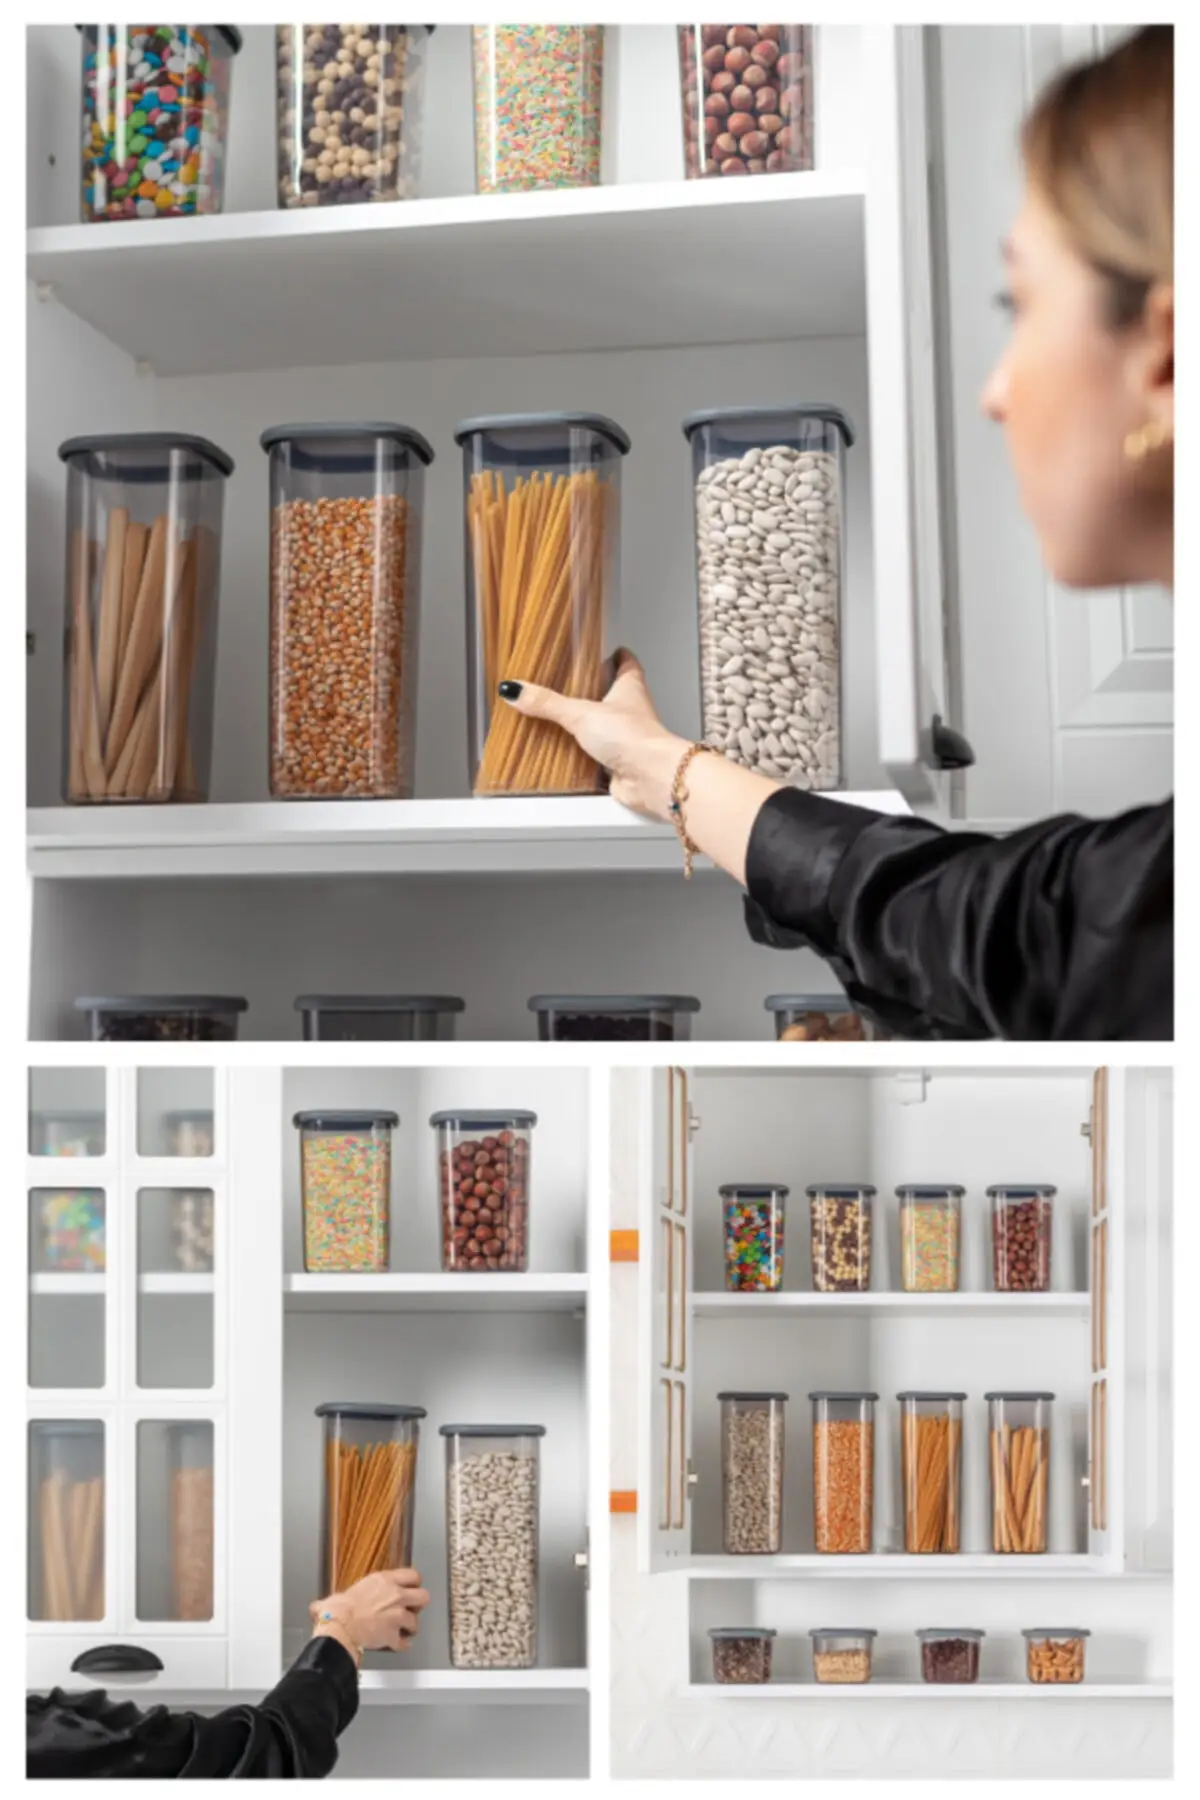 https://ae01.alicdn.com/kf/S072a3f8d1bfc4111b845b54c31297e9fA/24-Piece-Storage-Container-Kitchen-Accessories-Plastic-Set-Kitchen-Supplies-Useful-Multi-Purpose-Houseware-2022-BPA.jpg